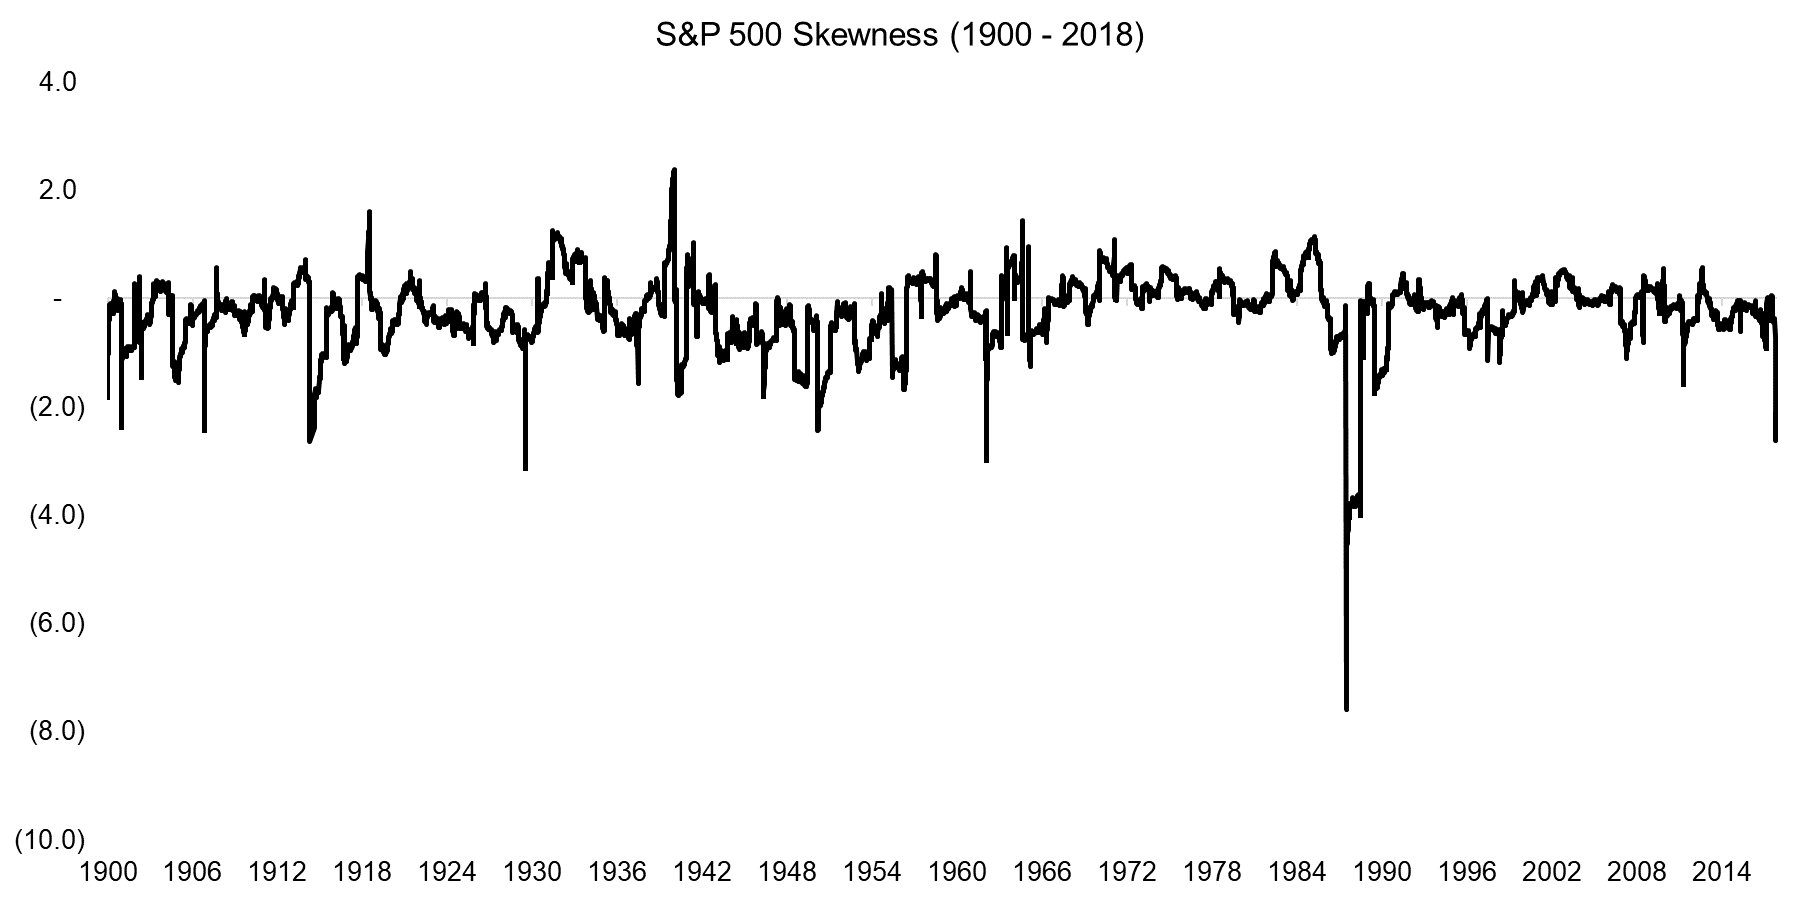 S&P 500 Skewness (1900 - 2018)